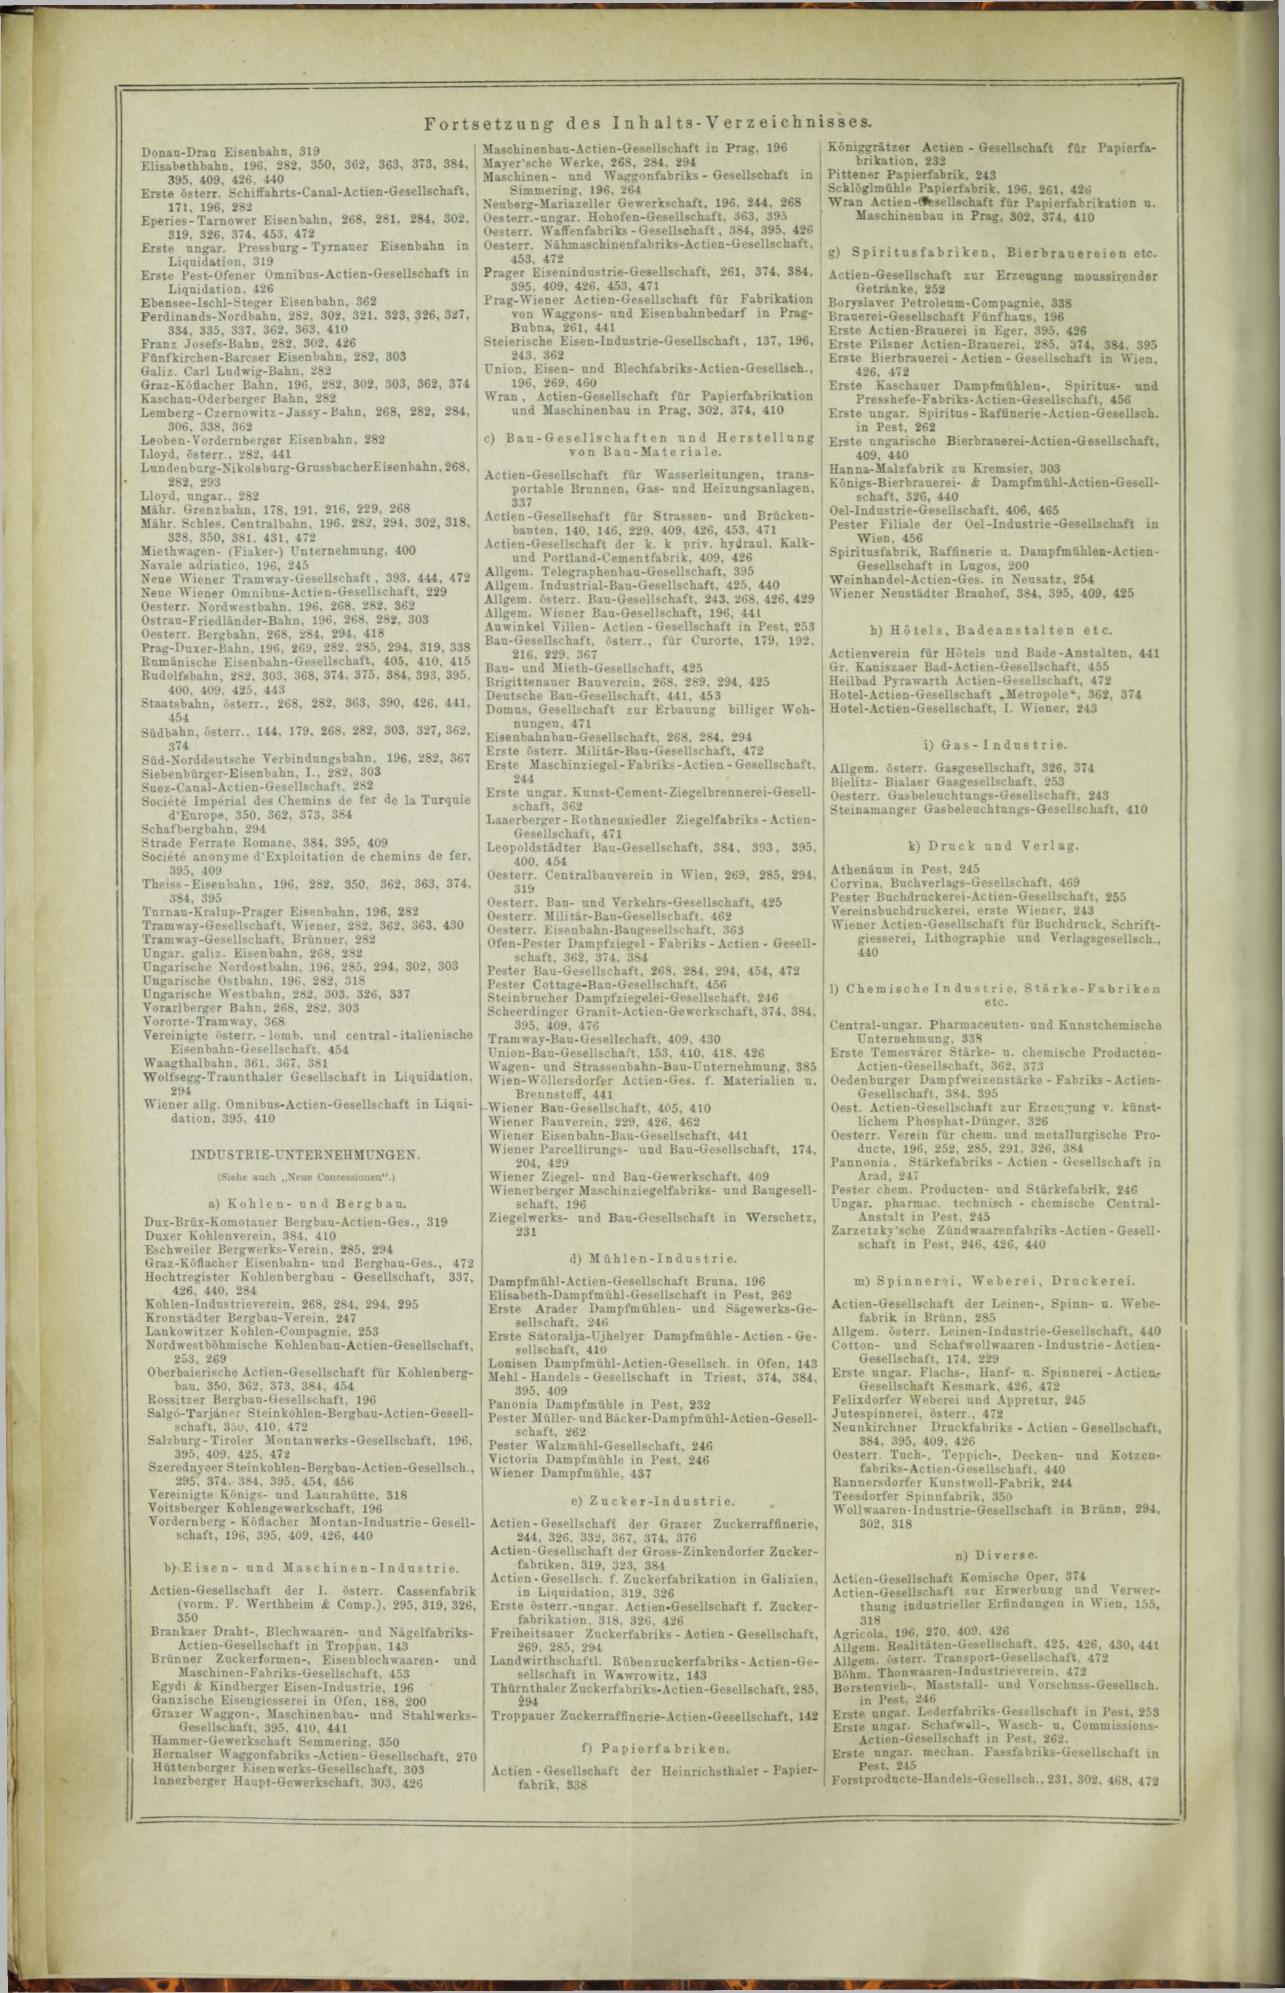 Der Tresor 07.08.1872 - Page 24